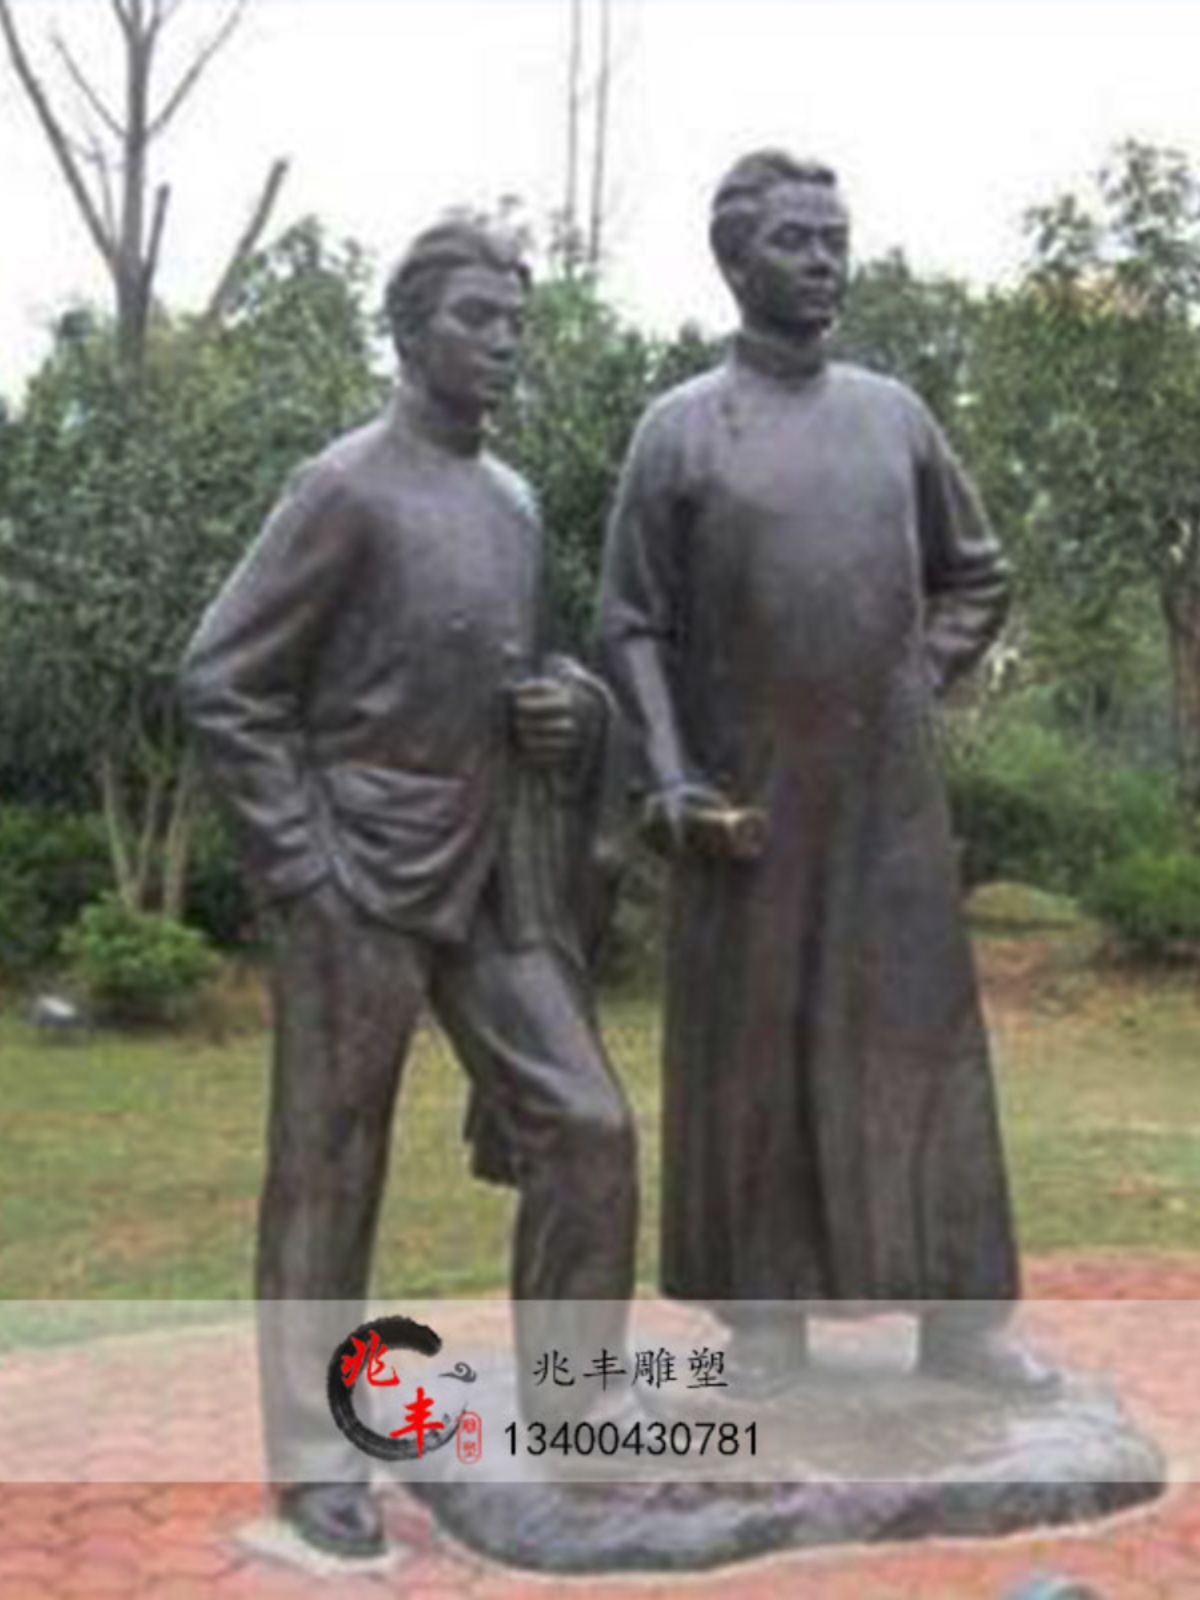 蔡和森铸铜像革命抗日战争五卅运动领导人户外园林玻璃钢雕塑定做